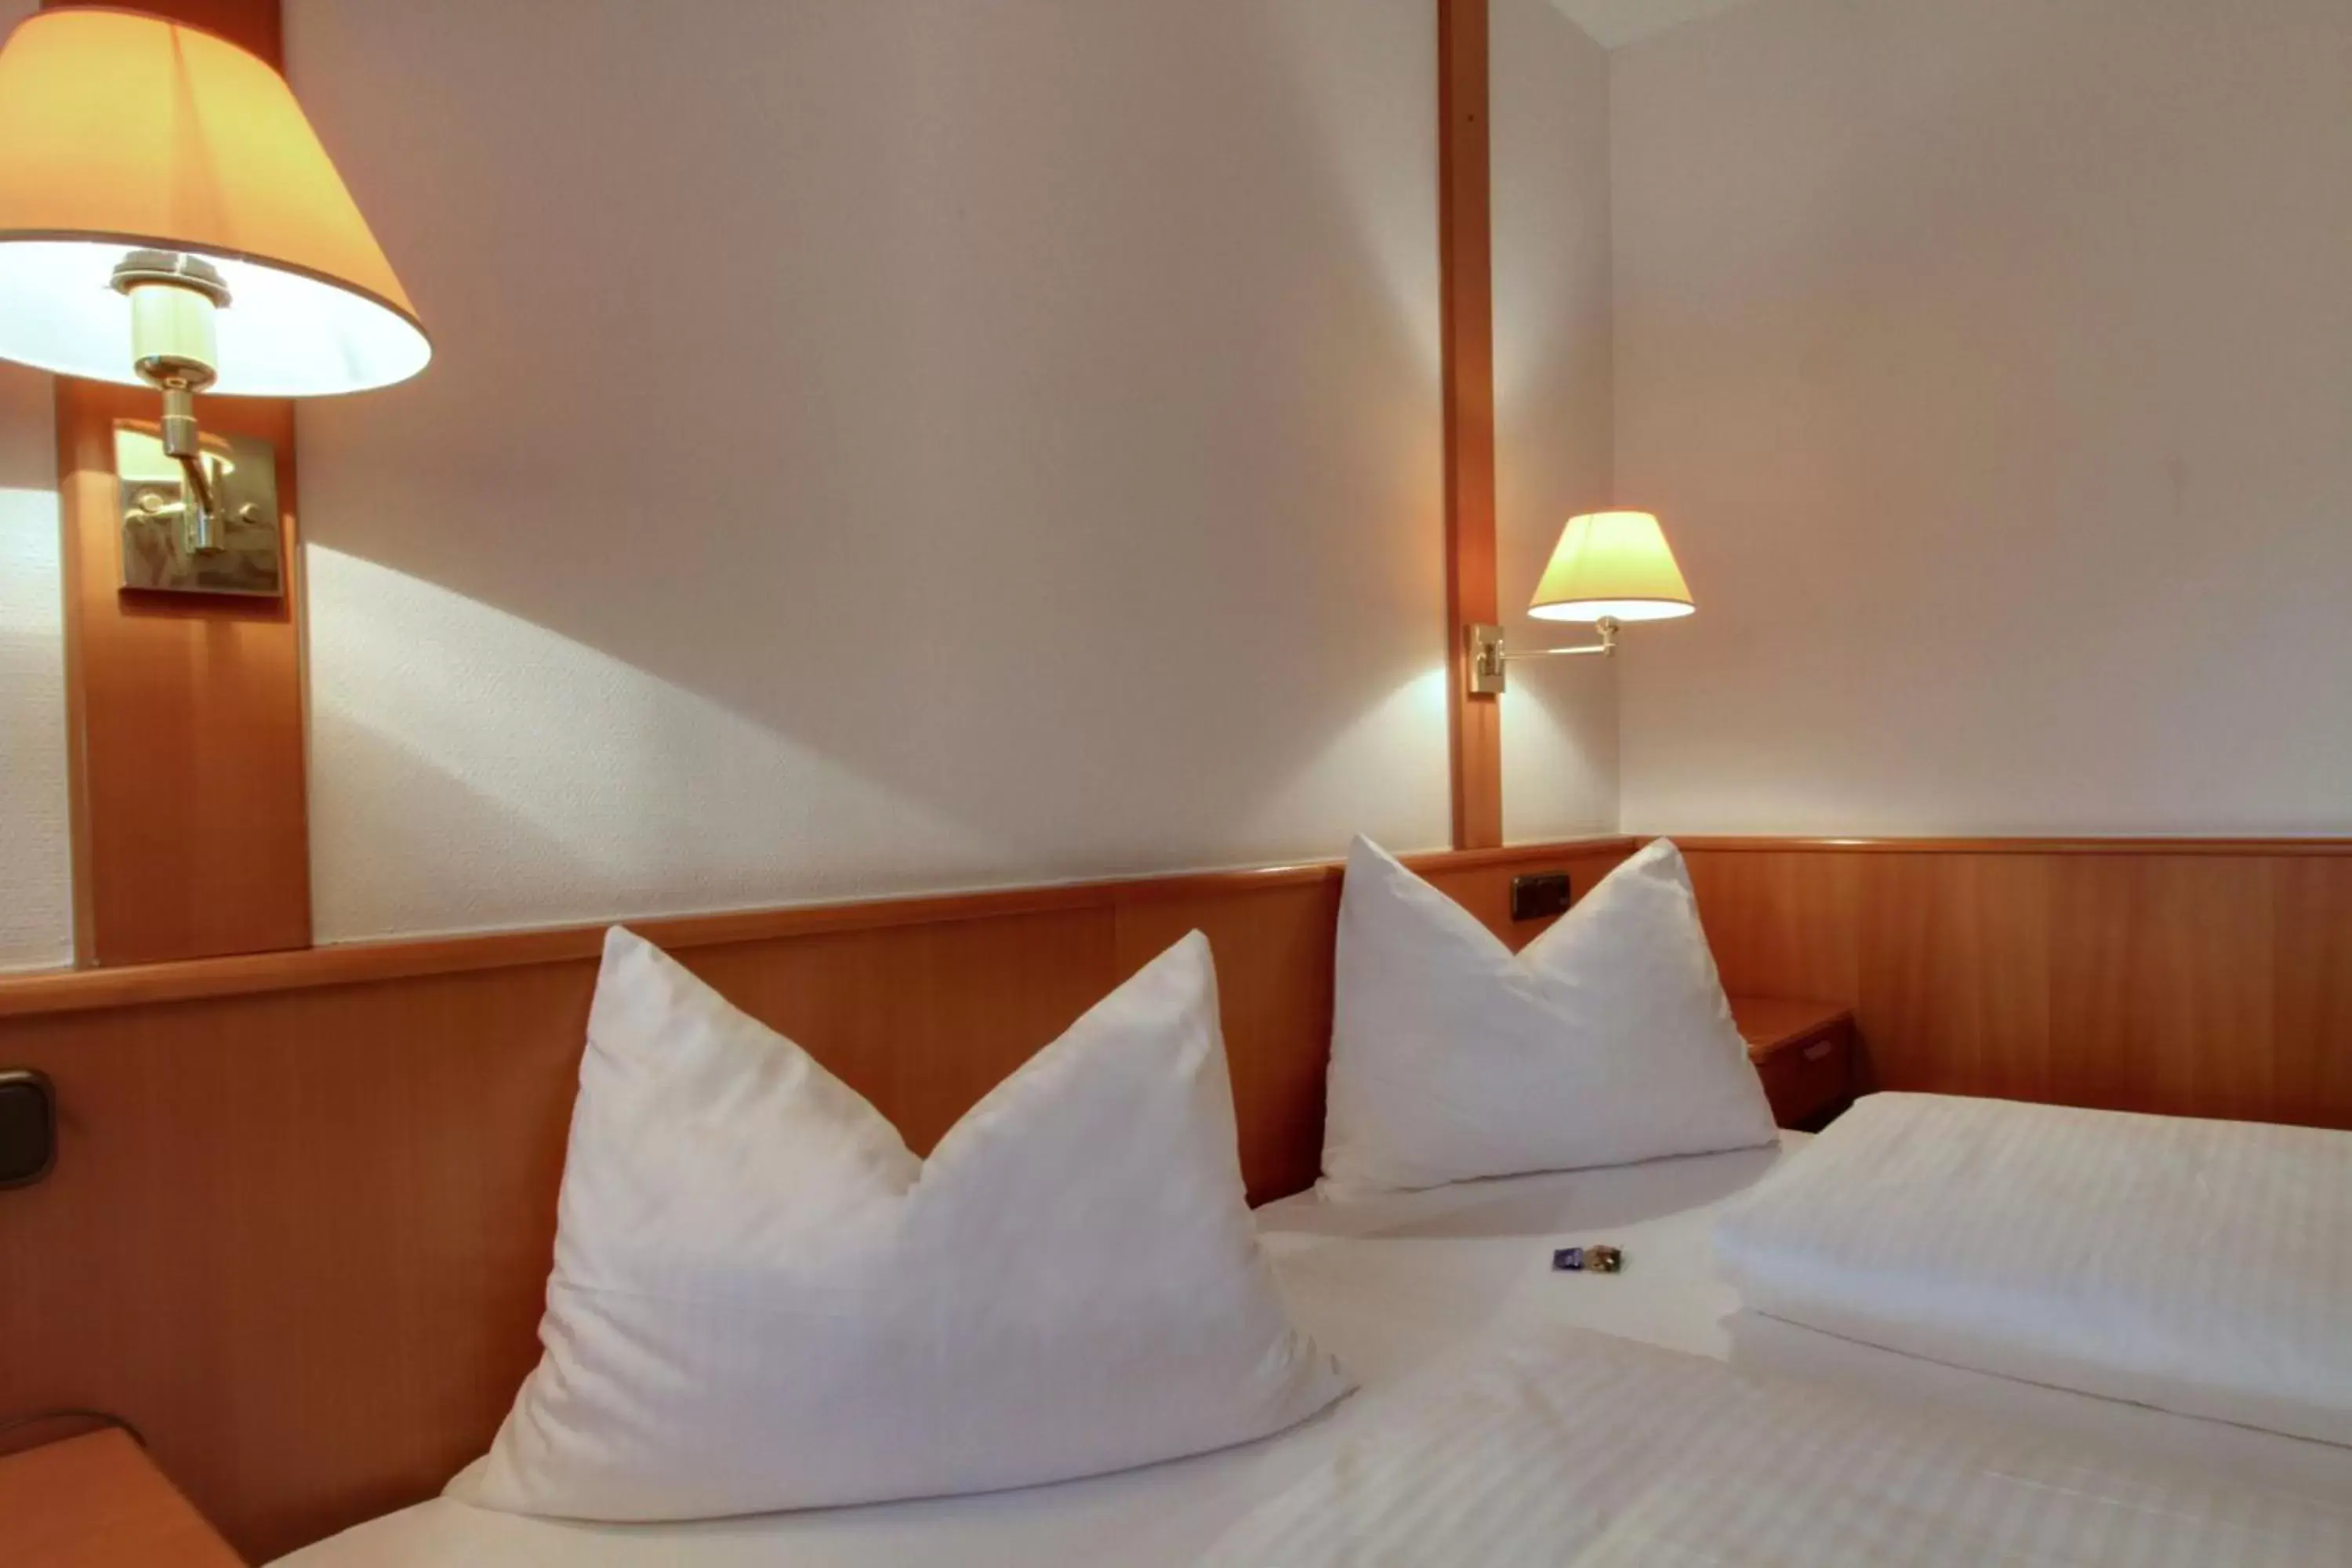 Bed in ACHAT Hotel Wetzlar